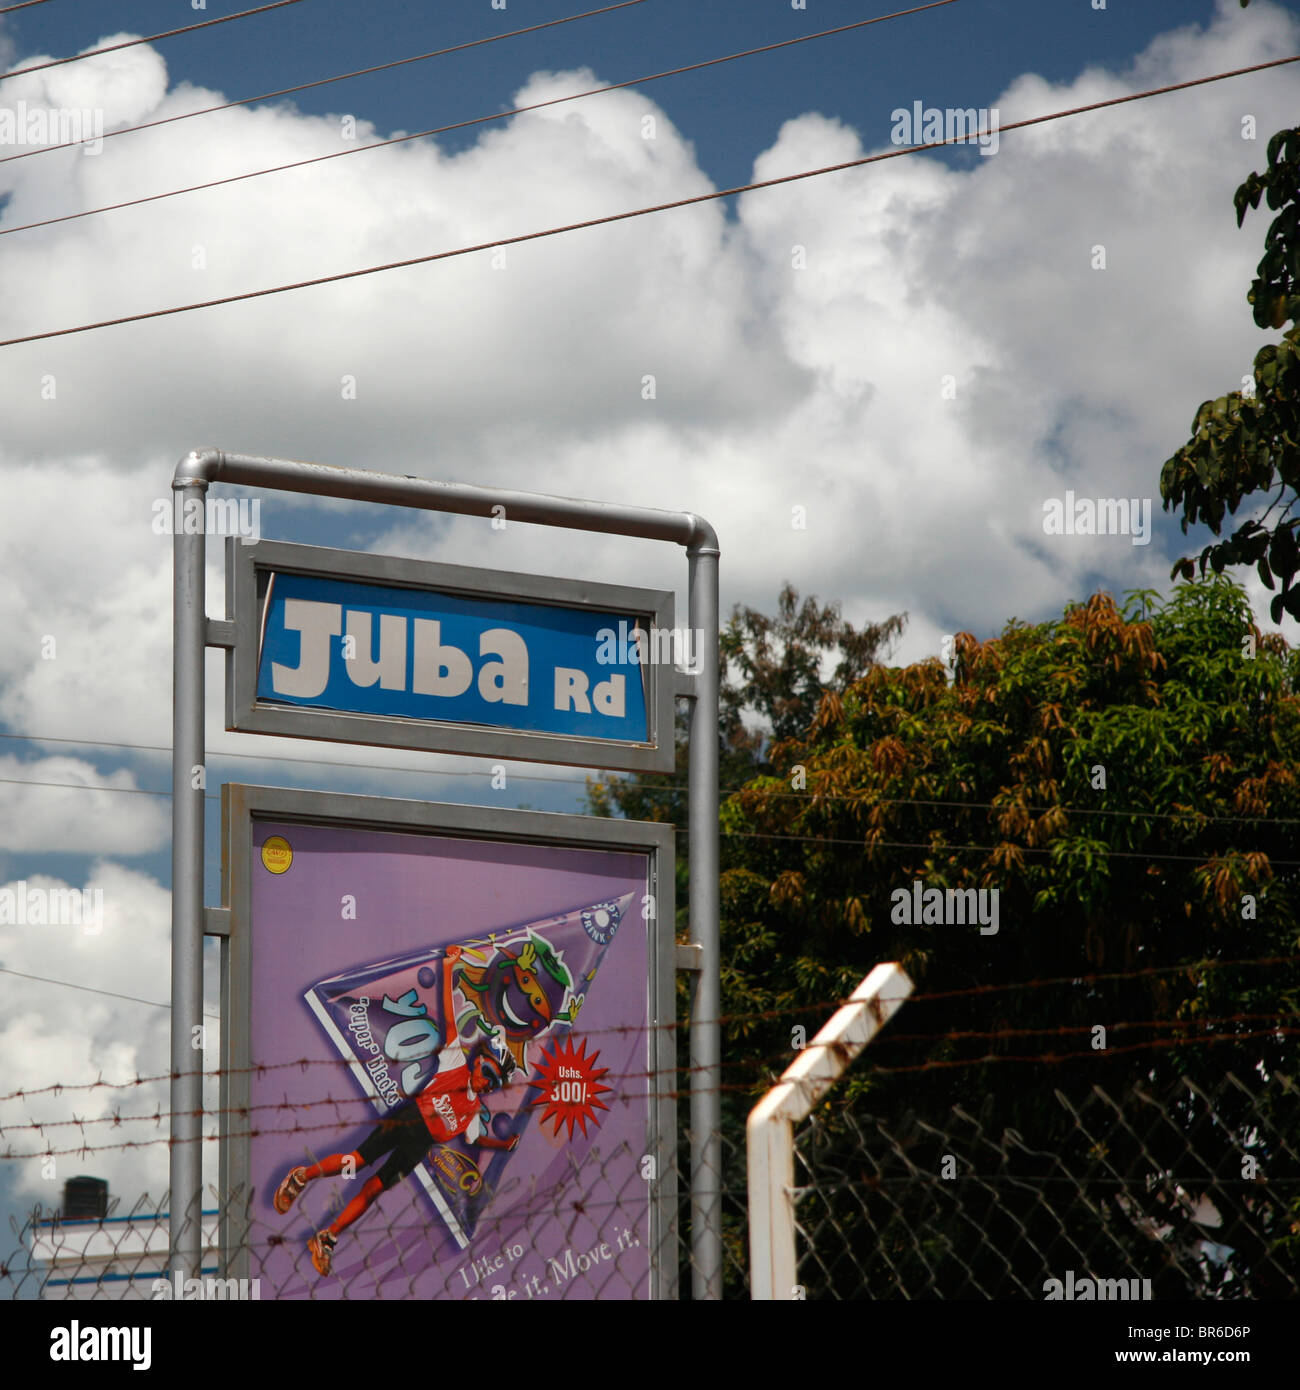 Un cartello a Gulu, in Uganda, dando il nome della strada che conduce a nord a Juba nel sud Sudan Foto Stock